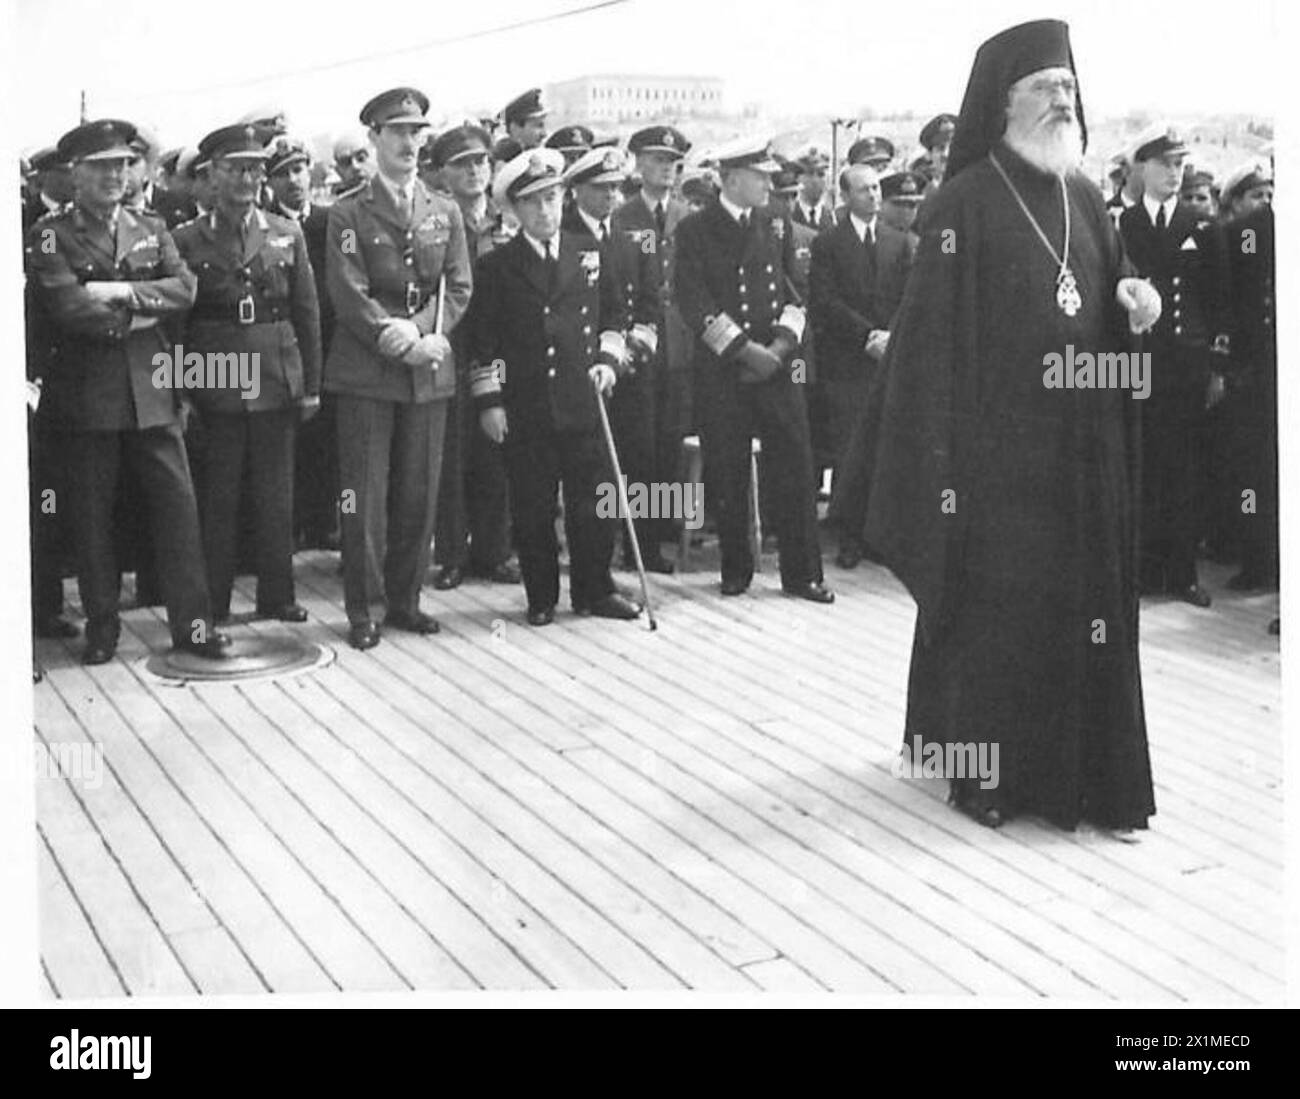 TRANSFERT DU SOUS-MARIN BRITANNIQUE À LA ROYAL HELLENIC NAVY - Archevêque Damaskinos se tient devant un groupe d'officiers supérieurs à bord et AVEROF lors de la cérémonie, armée britannique Banque D'Images